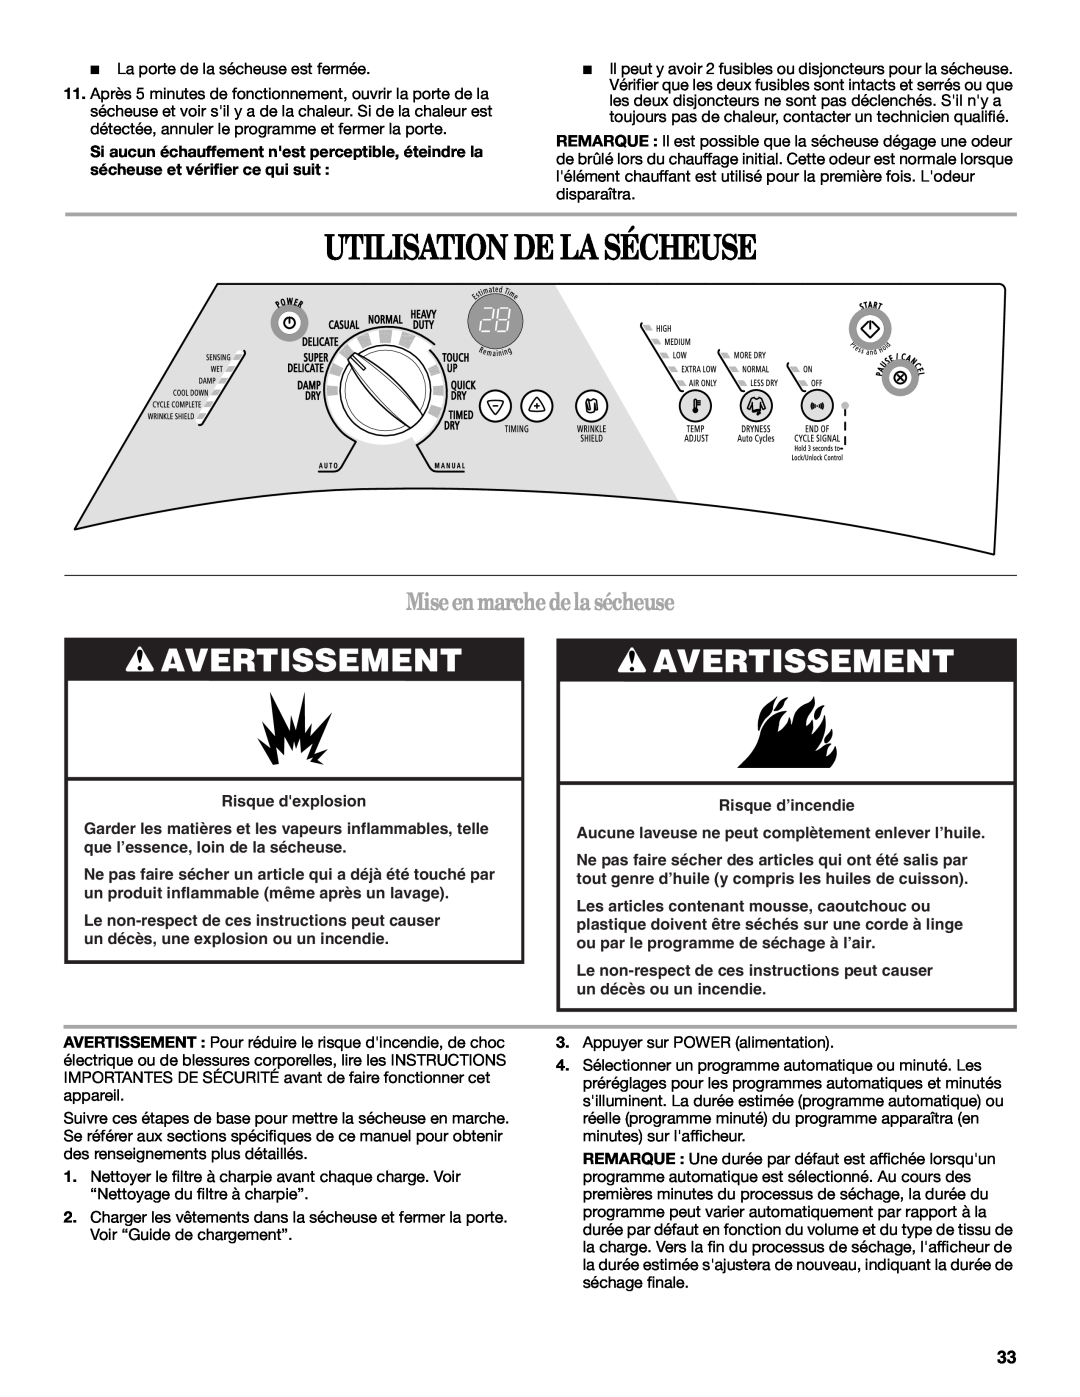 Whirlpool 8578901 manual Utilisation De La Sécheuse, Miseenmarchedelasécheuse, Avertissement, Risque dexplosion 